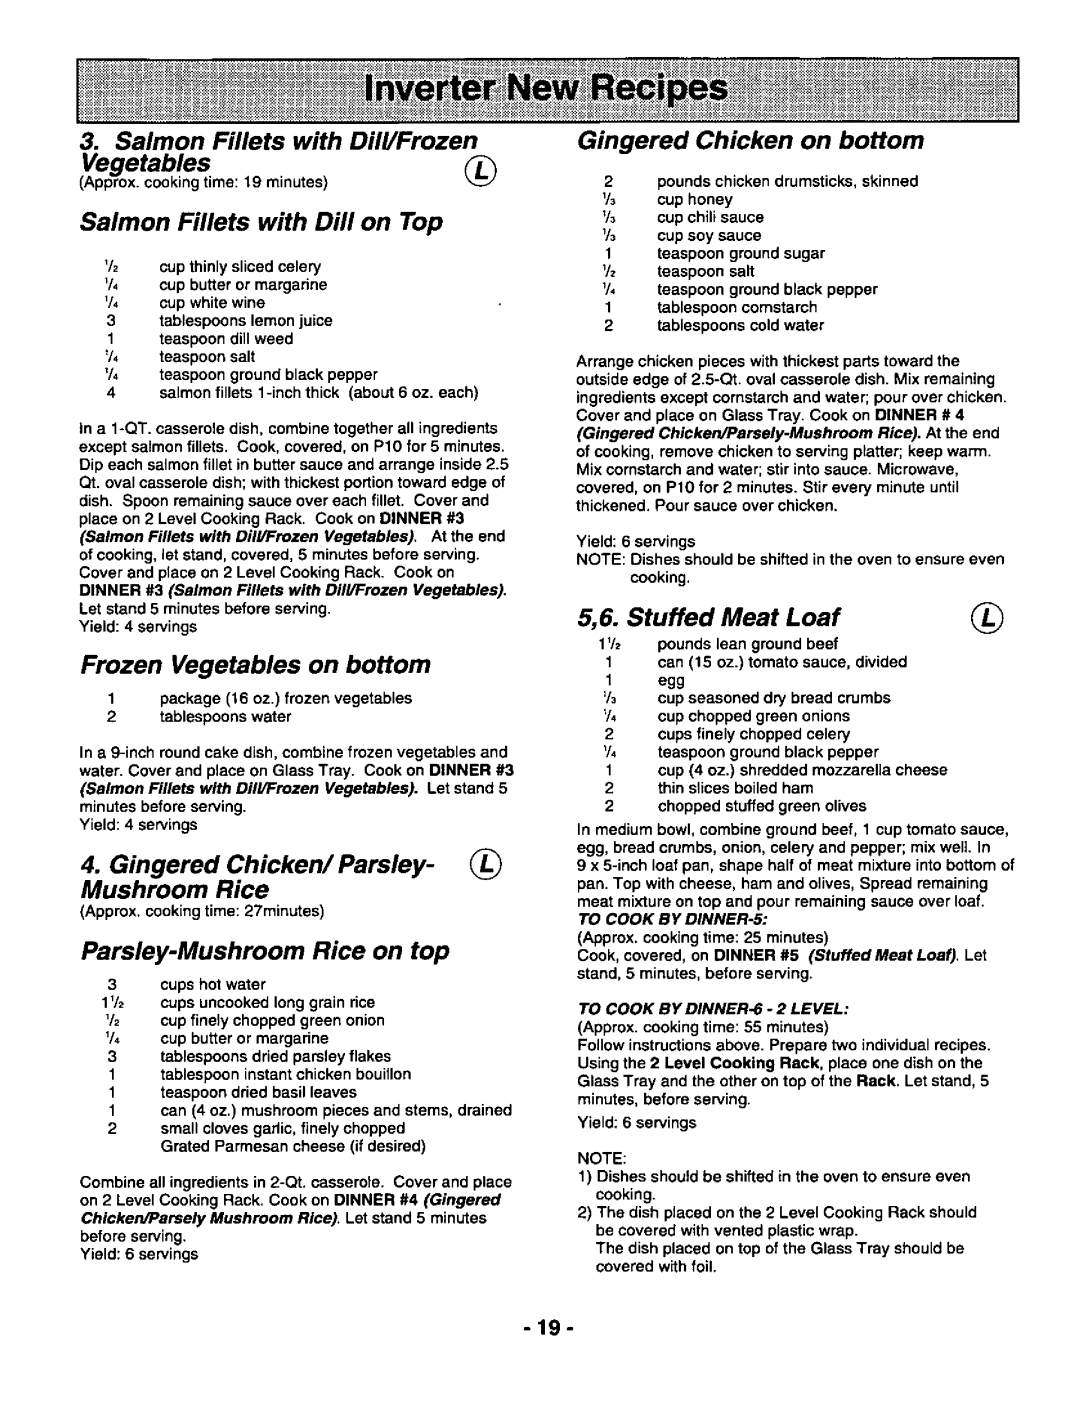 Panasonic NNT900SA manual 